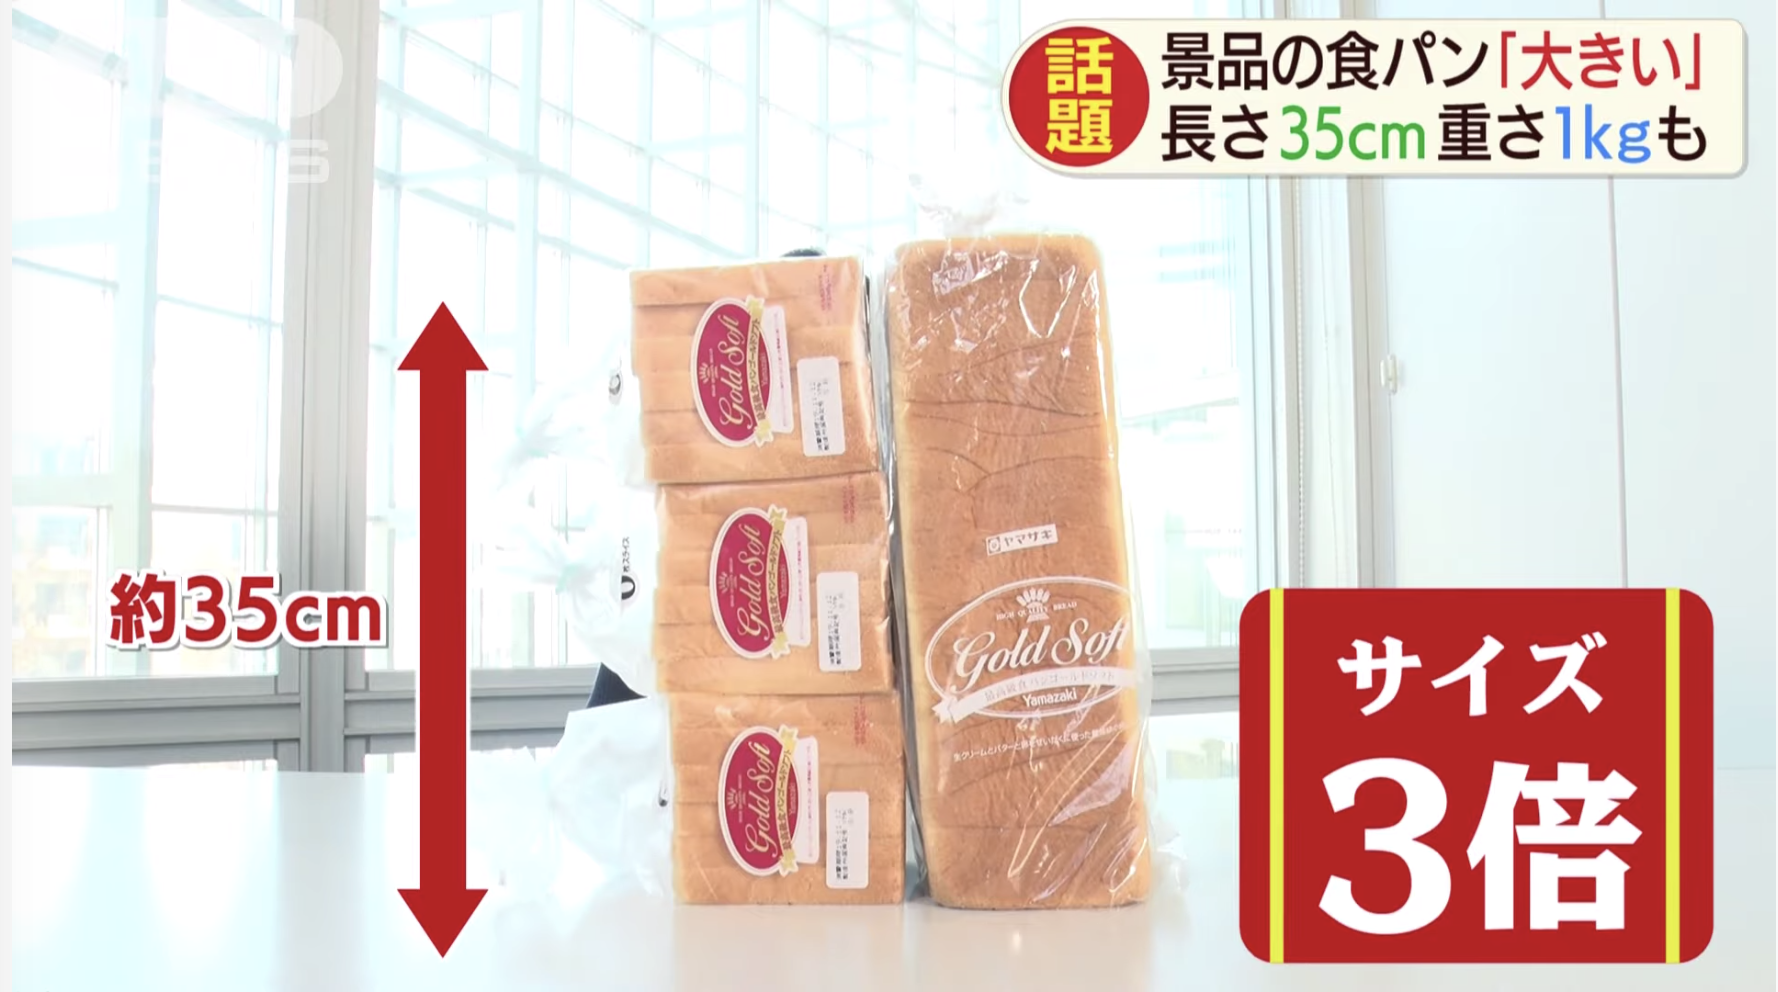 【重さ1kg】山崎のジャンボ食パンに驚きの声